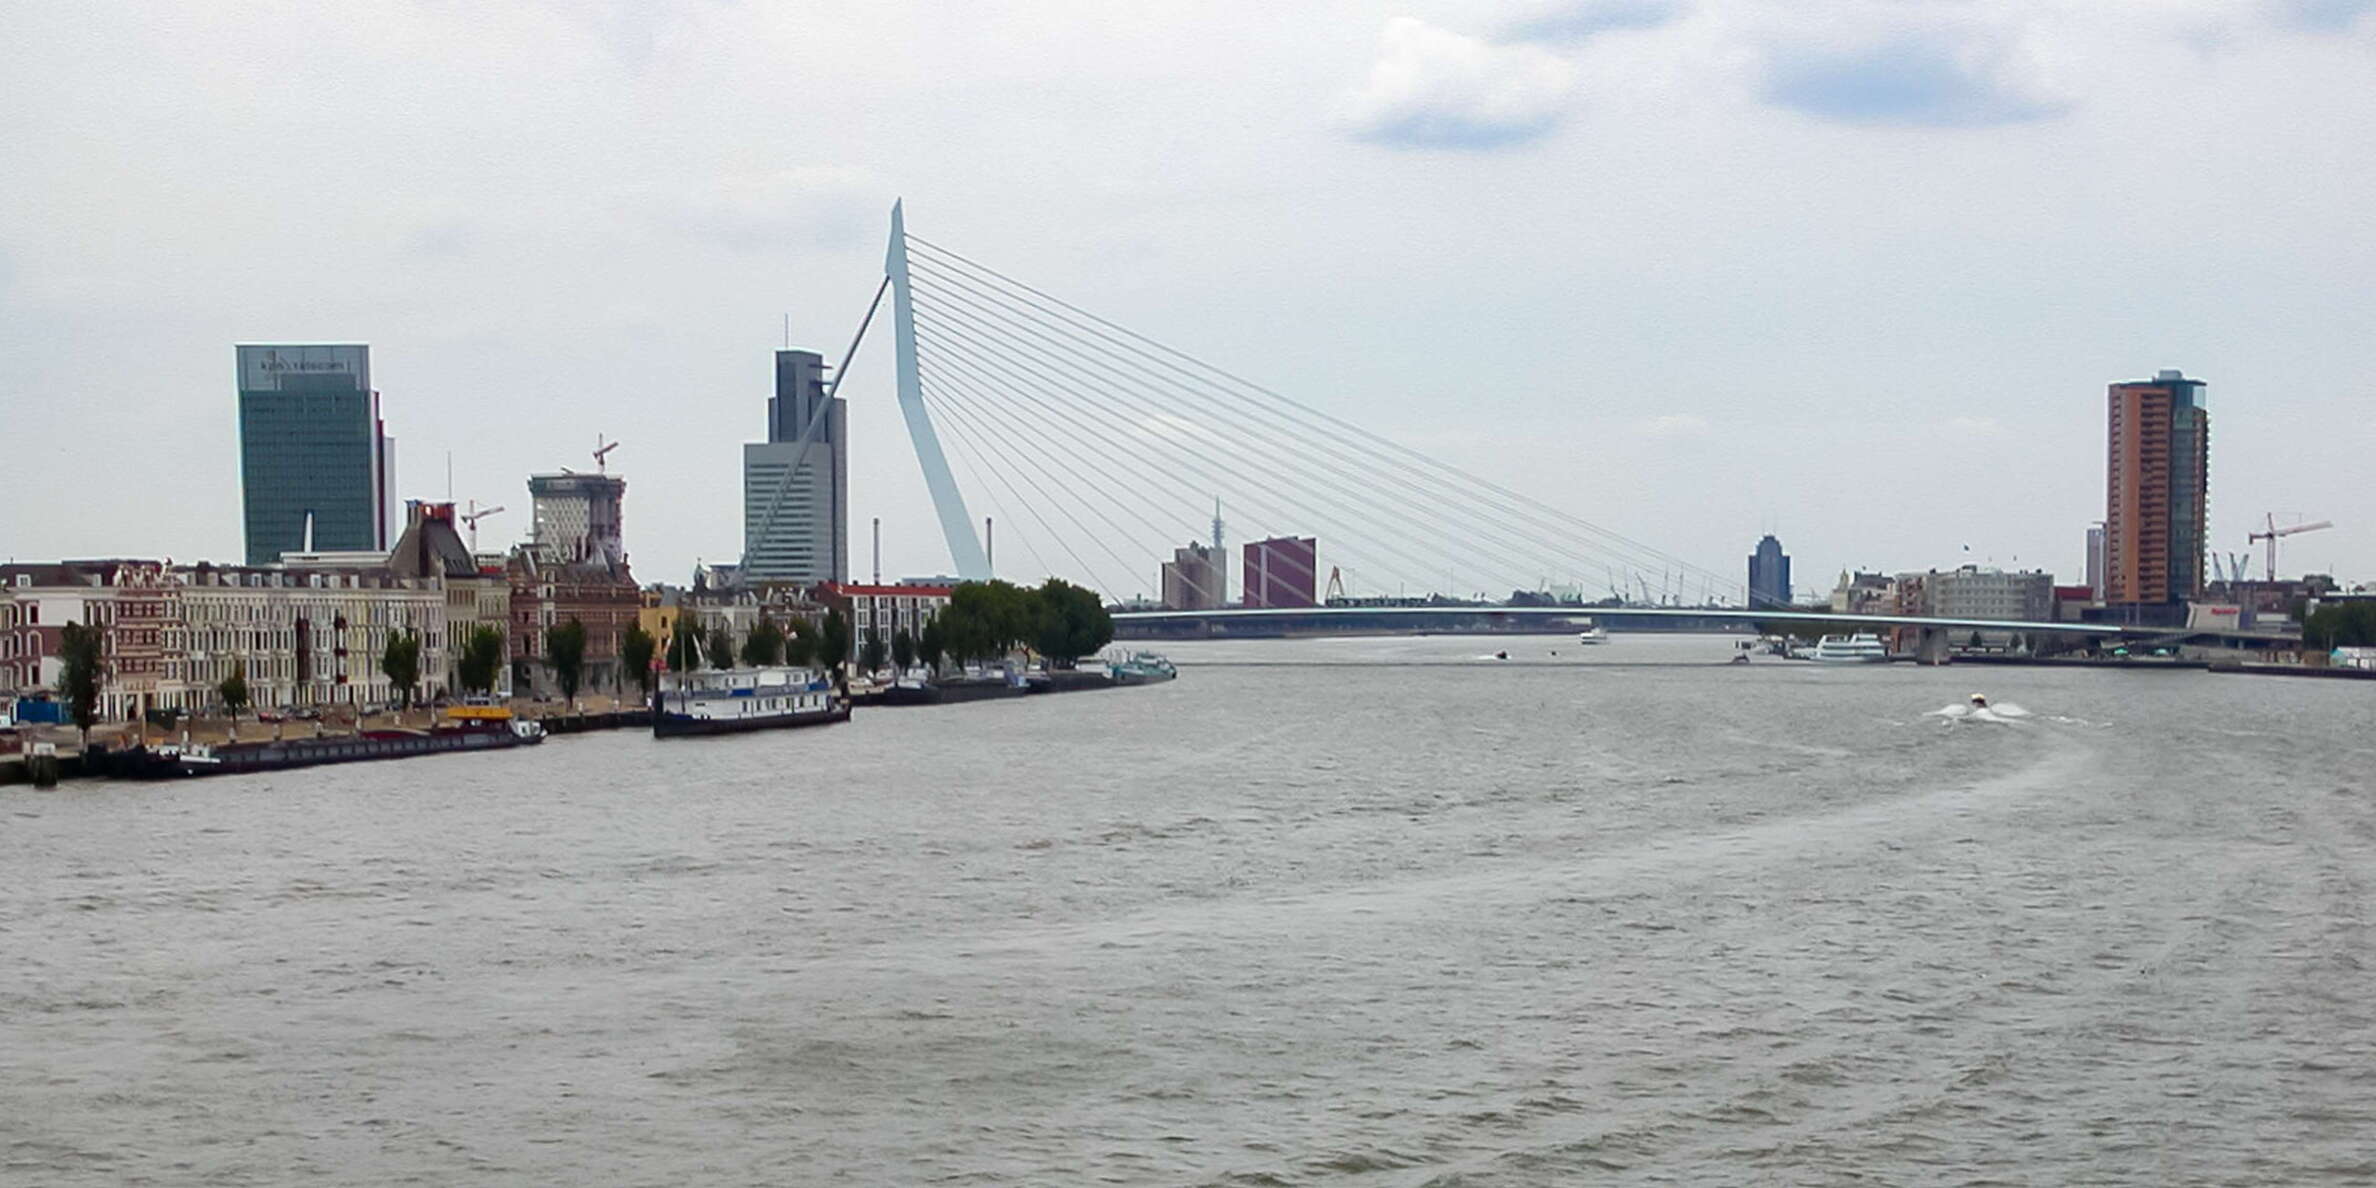 Rotterdam | Nieuwe Maas with Erasmusbrug